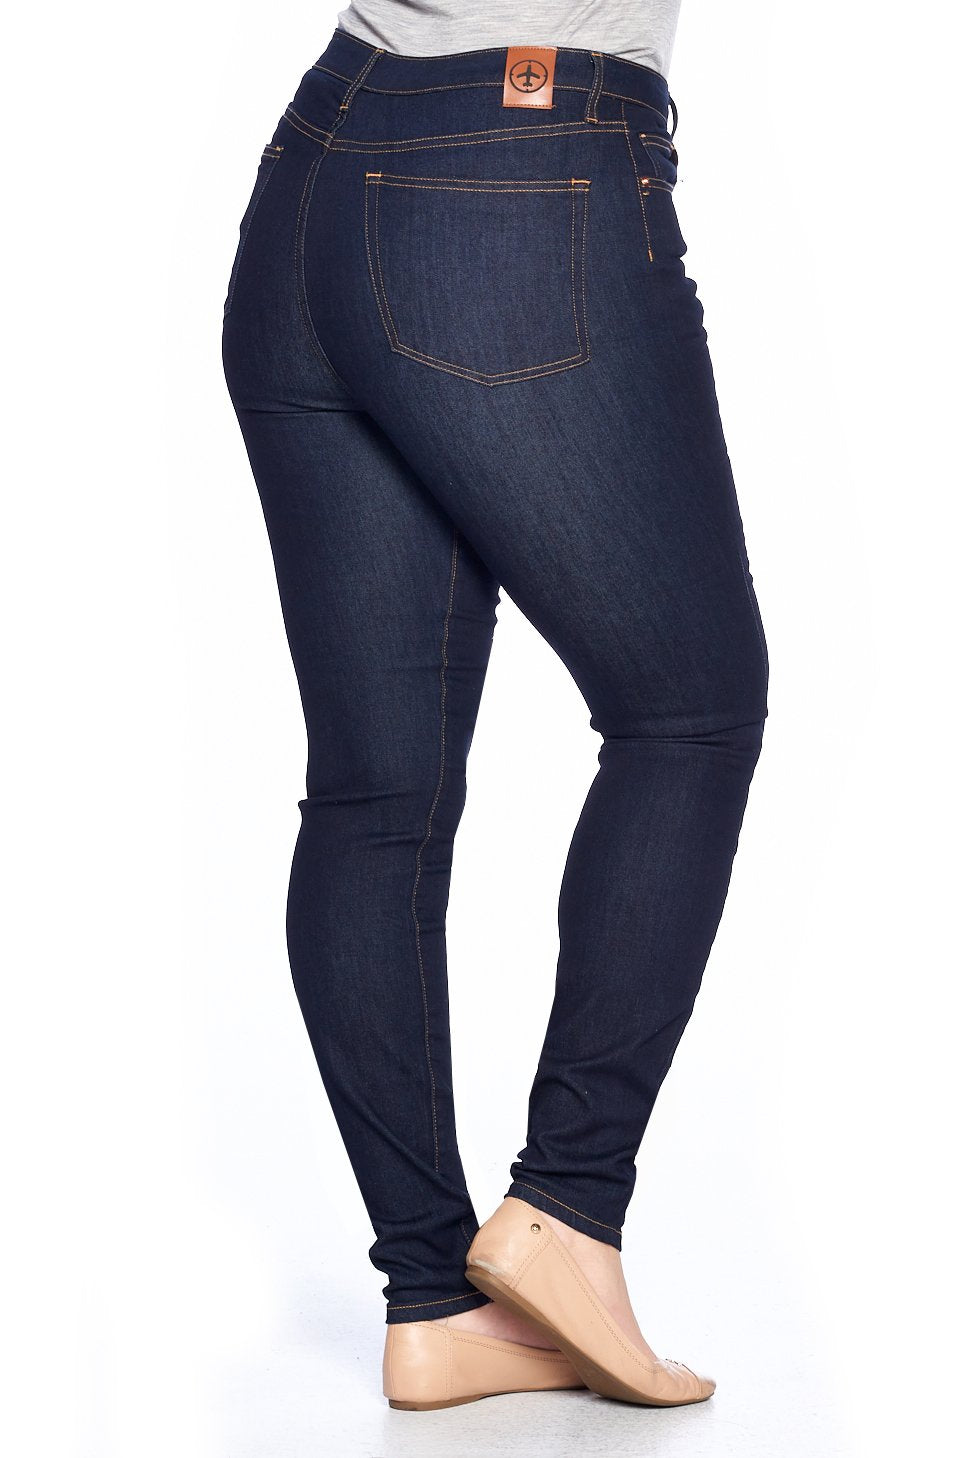 Trillen nemen Vlekkeloos Women's Comfort Skinny Fit Jeans | Dark Indigo | Made in the USA - Aviator